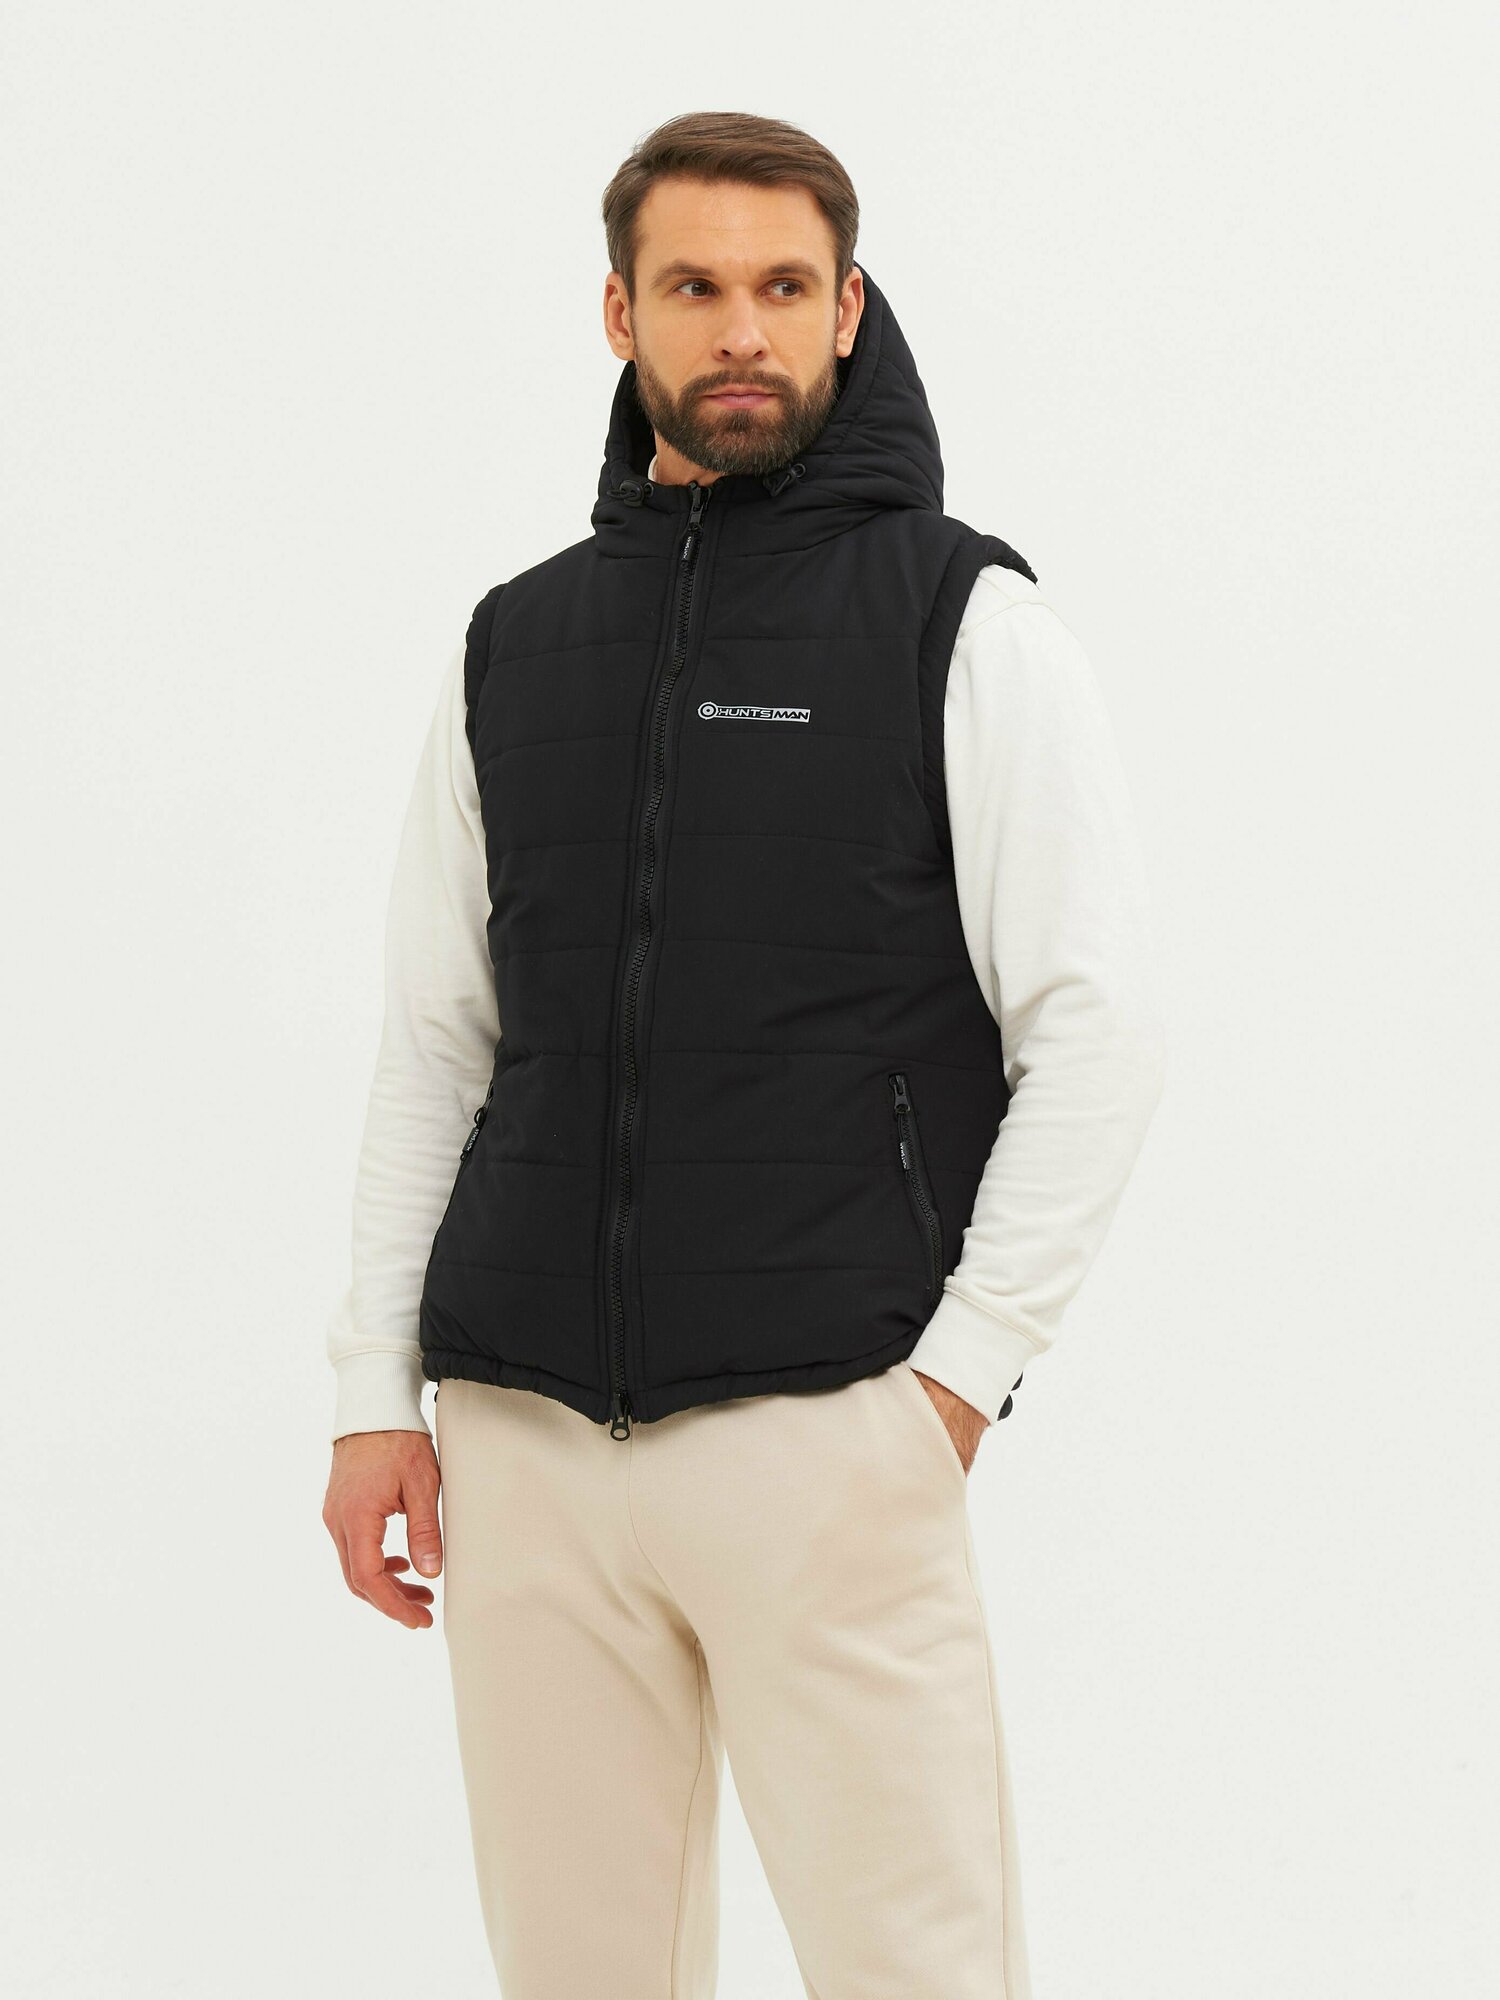 Жилет мужской утепленный демисезонный Huntsman Фристайл с карманами, капюшоном, ткань Канада, цвет черный (р.52-54/182)